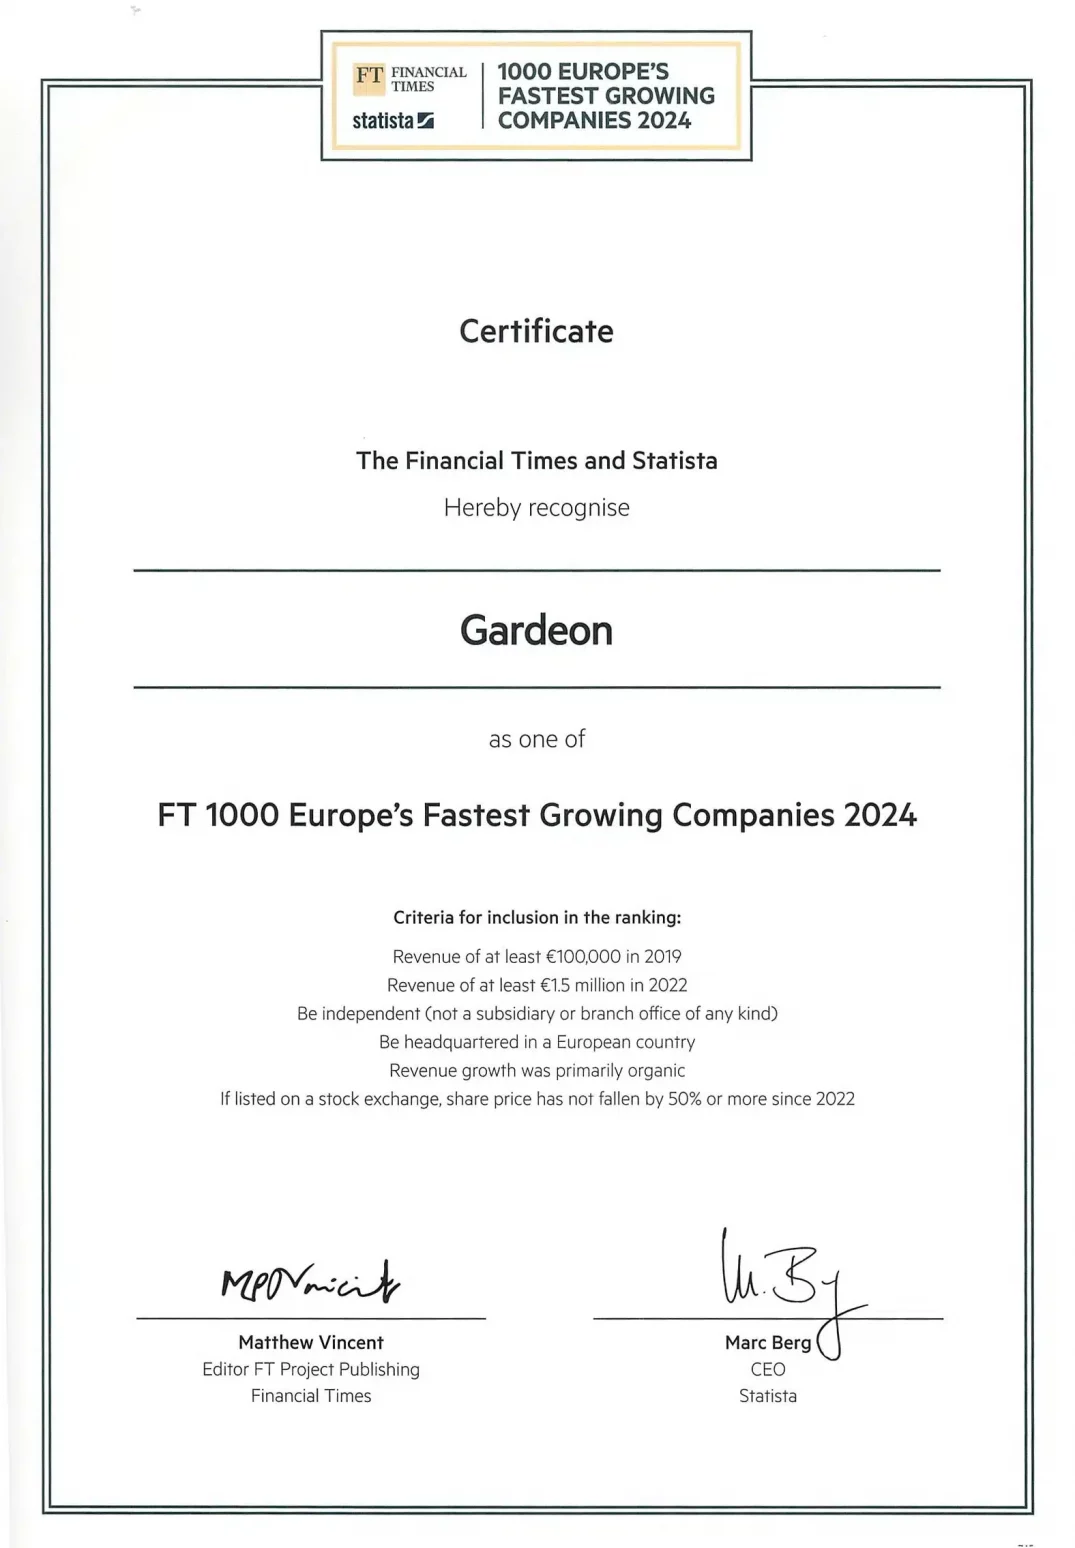 Certifikát pro 1000 nejrychleji rostoucích firem v Evropě